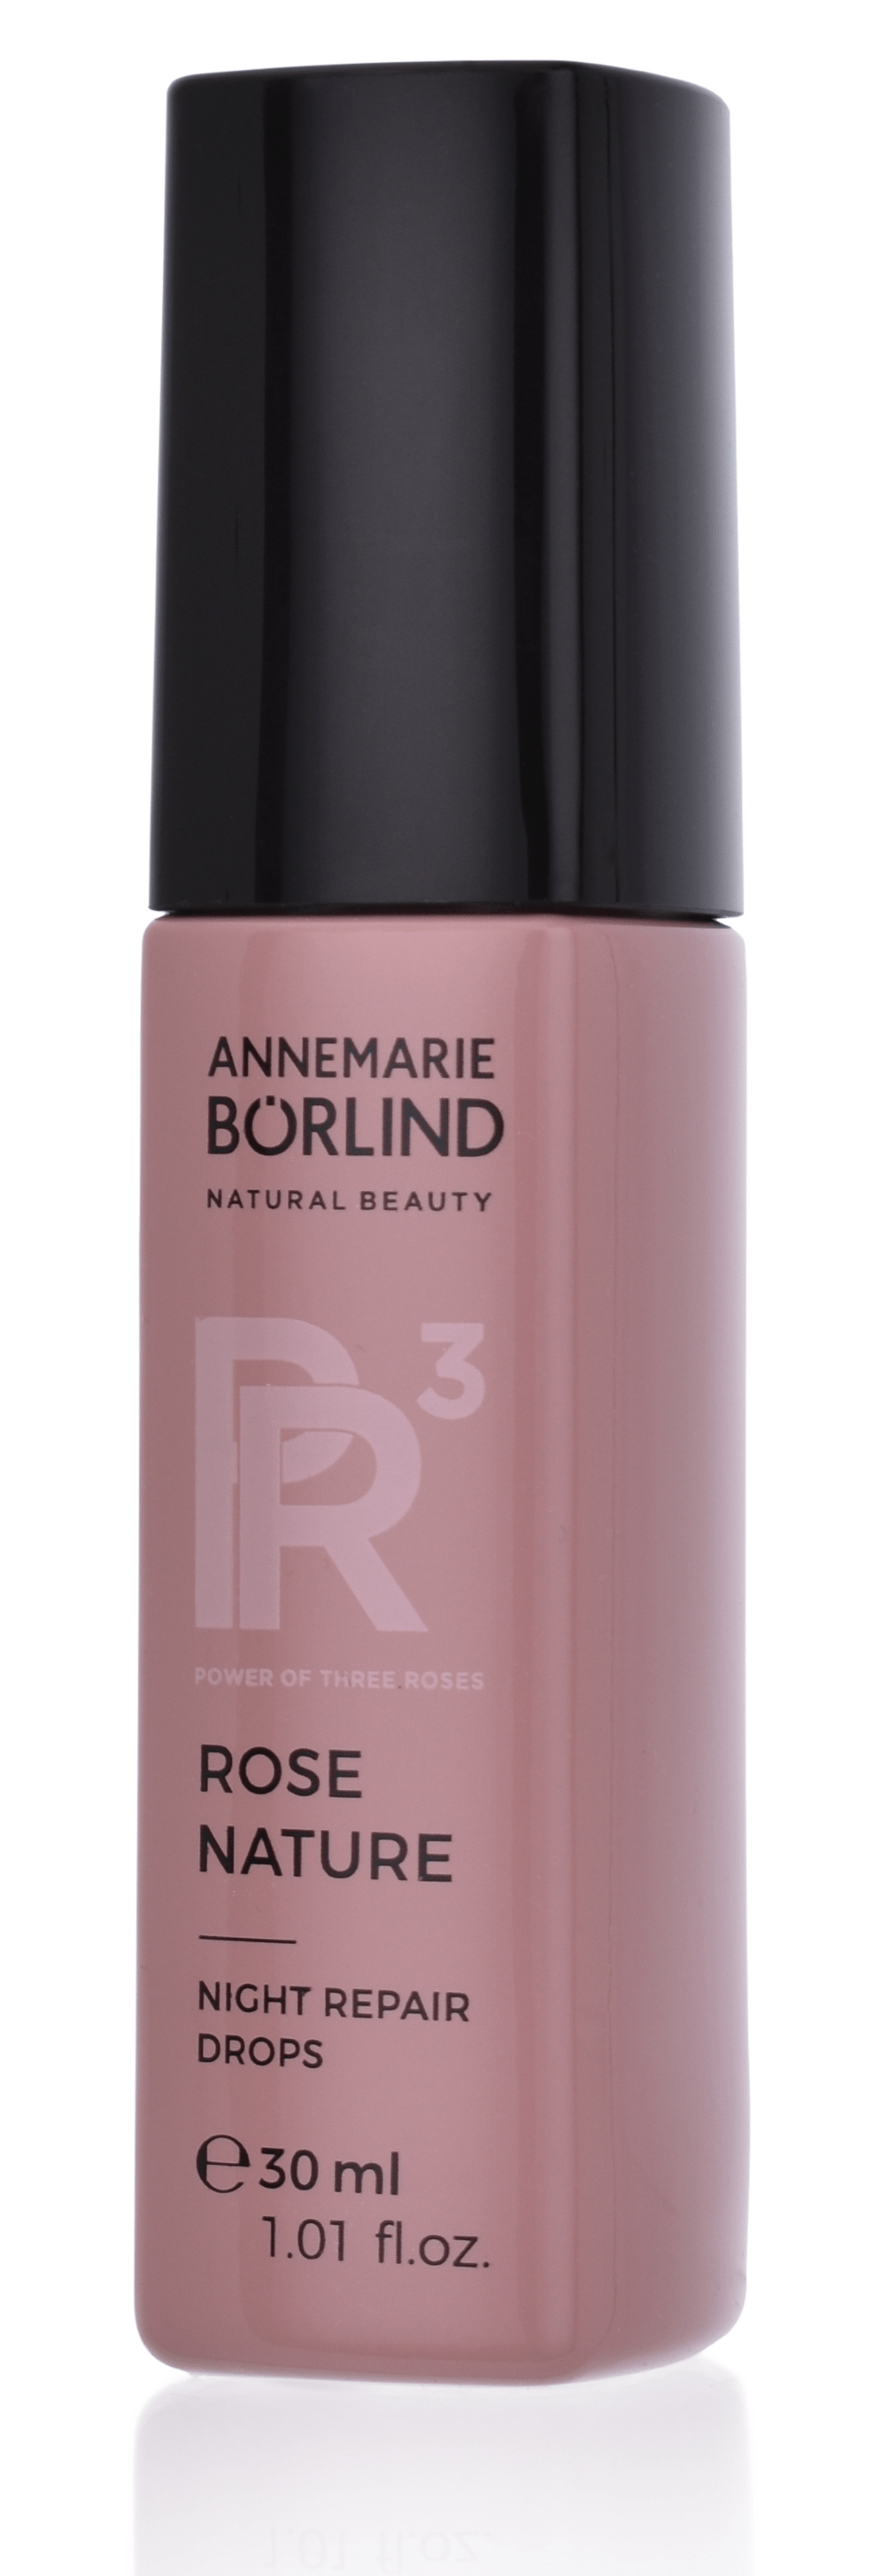 ANNEMARIE BÖRLIND ROSE NATURE - Night Repair Drops 30 ml